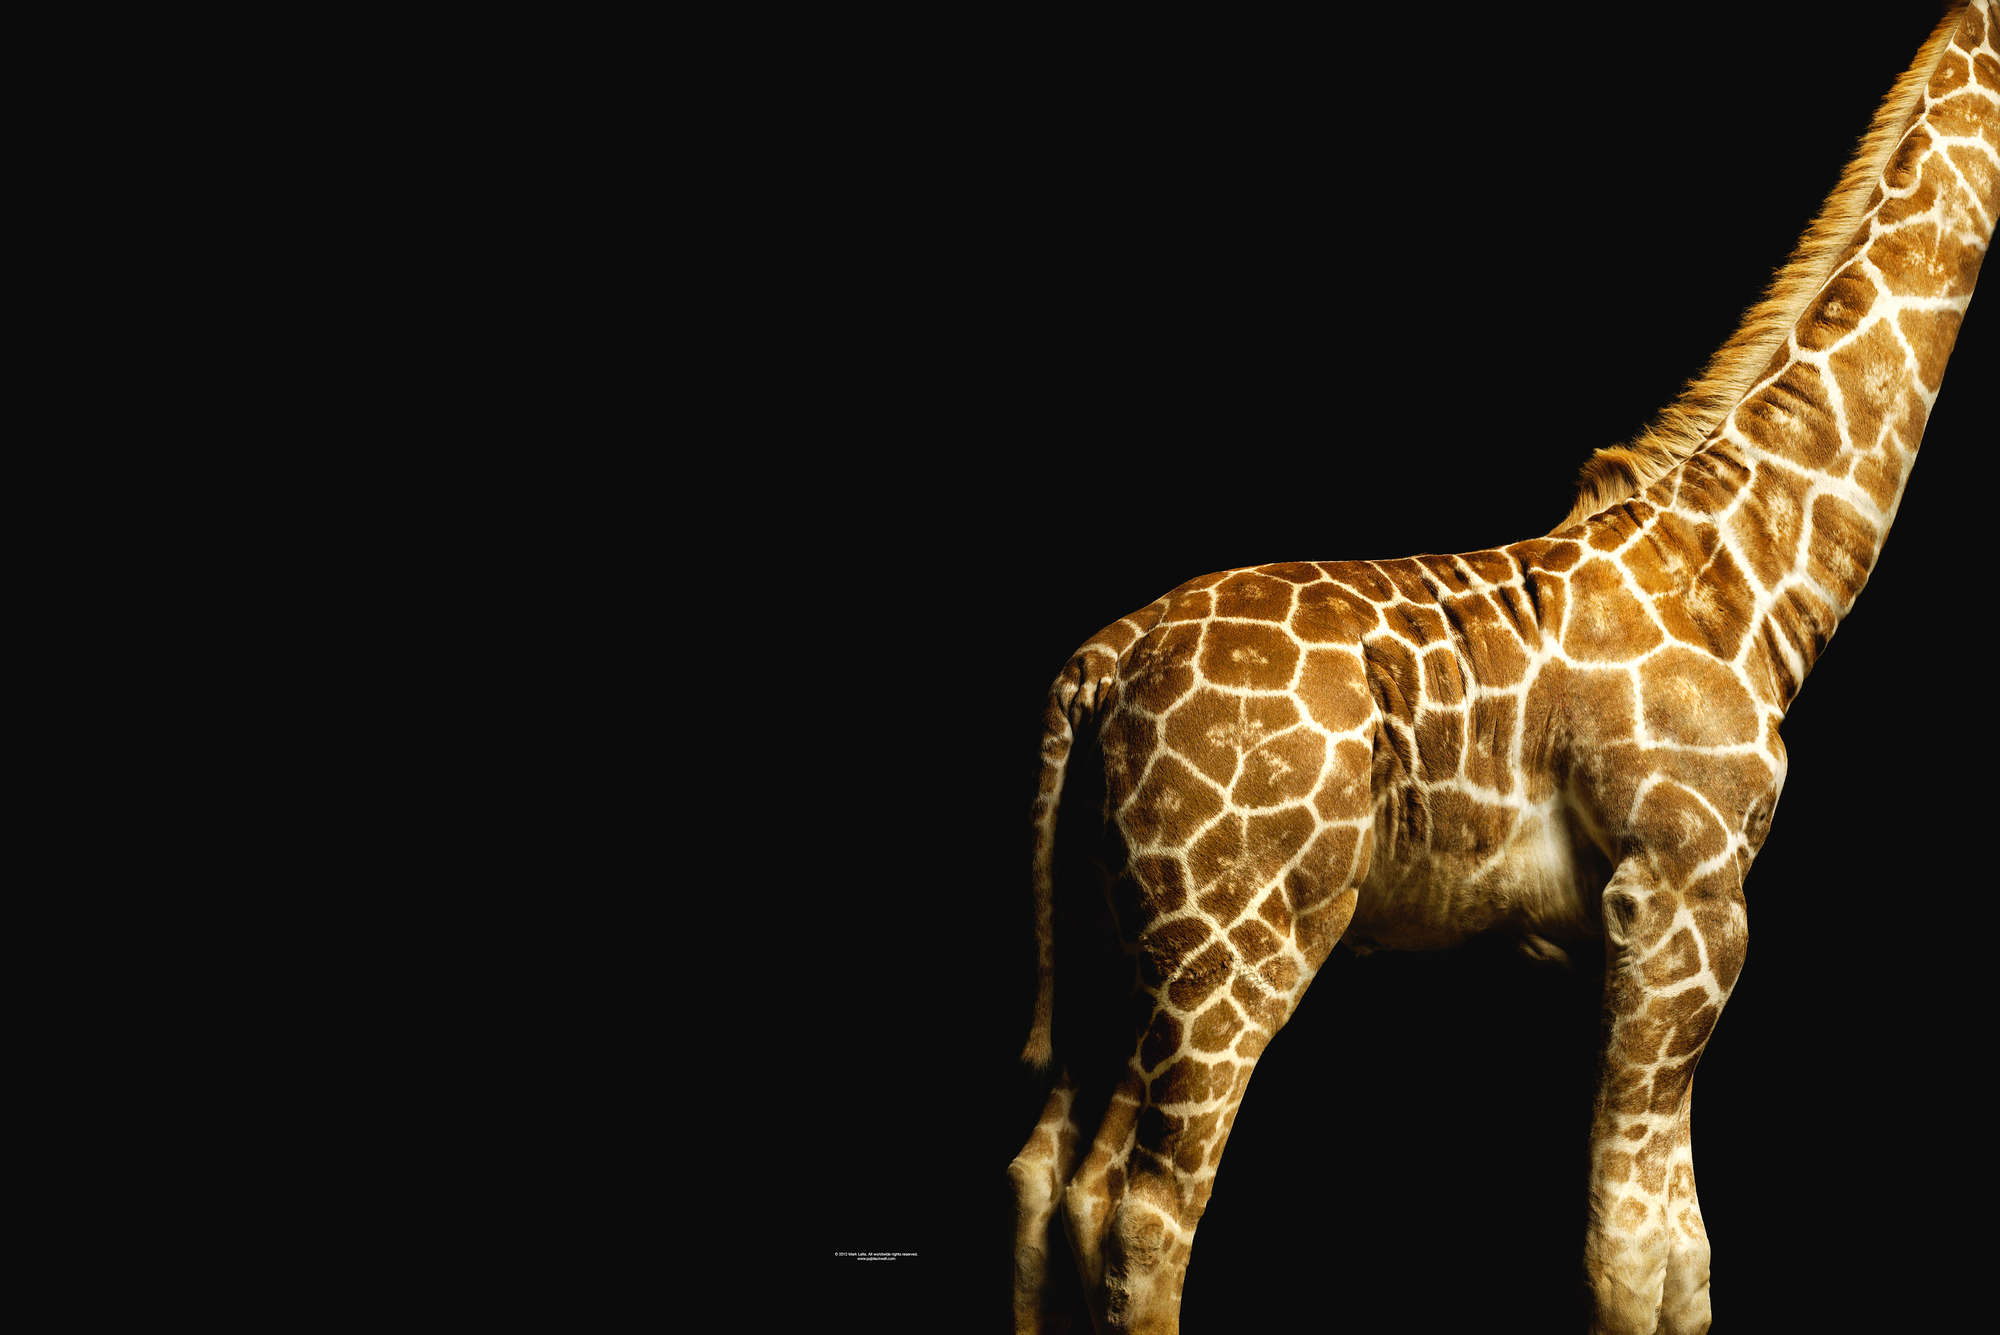             Corpo di giraffa - Carta da parati con ritratto animale
        